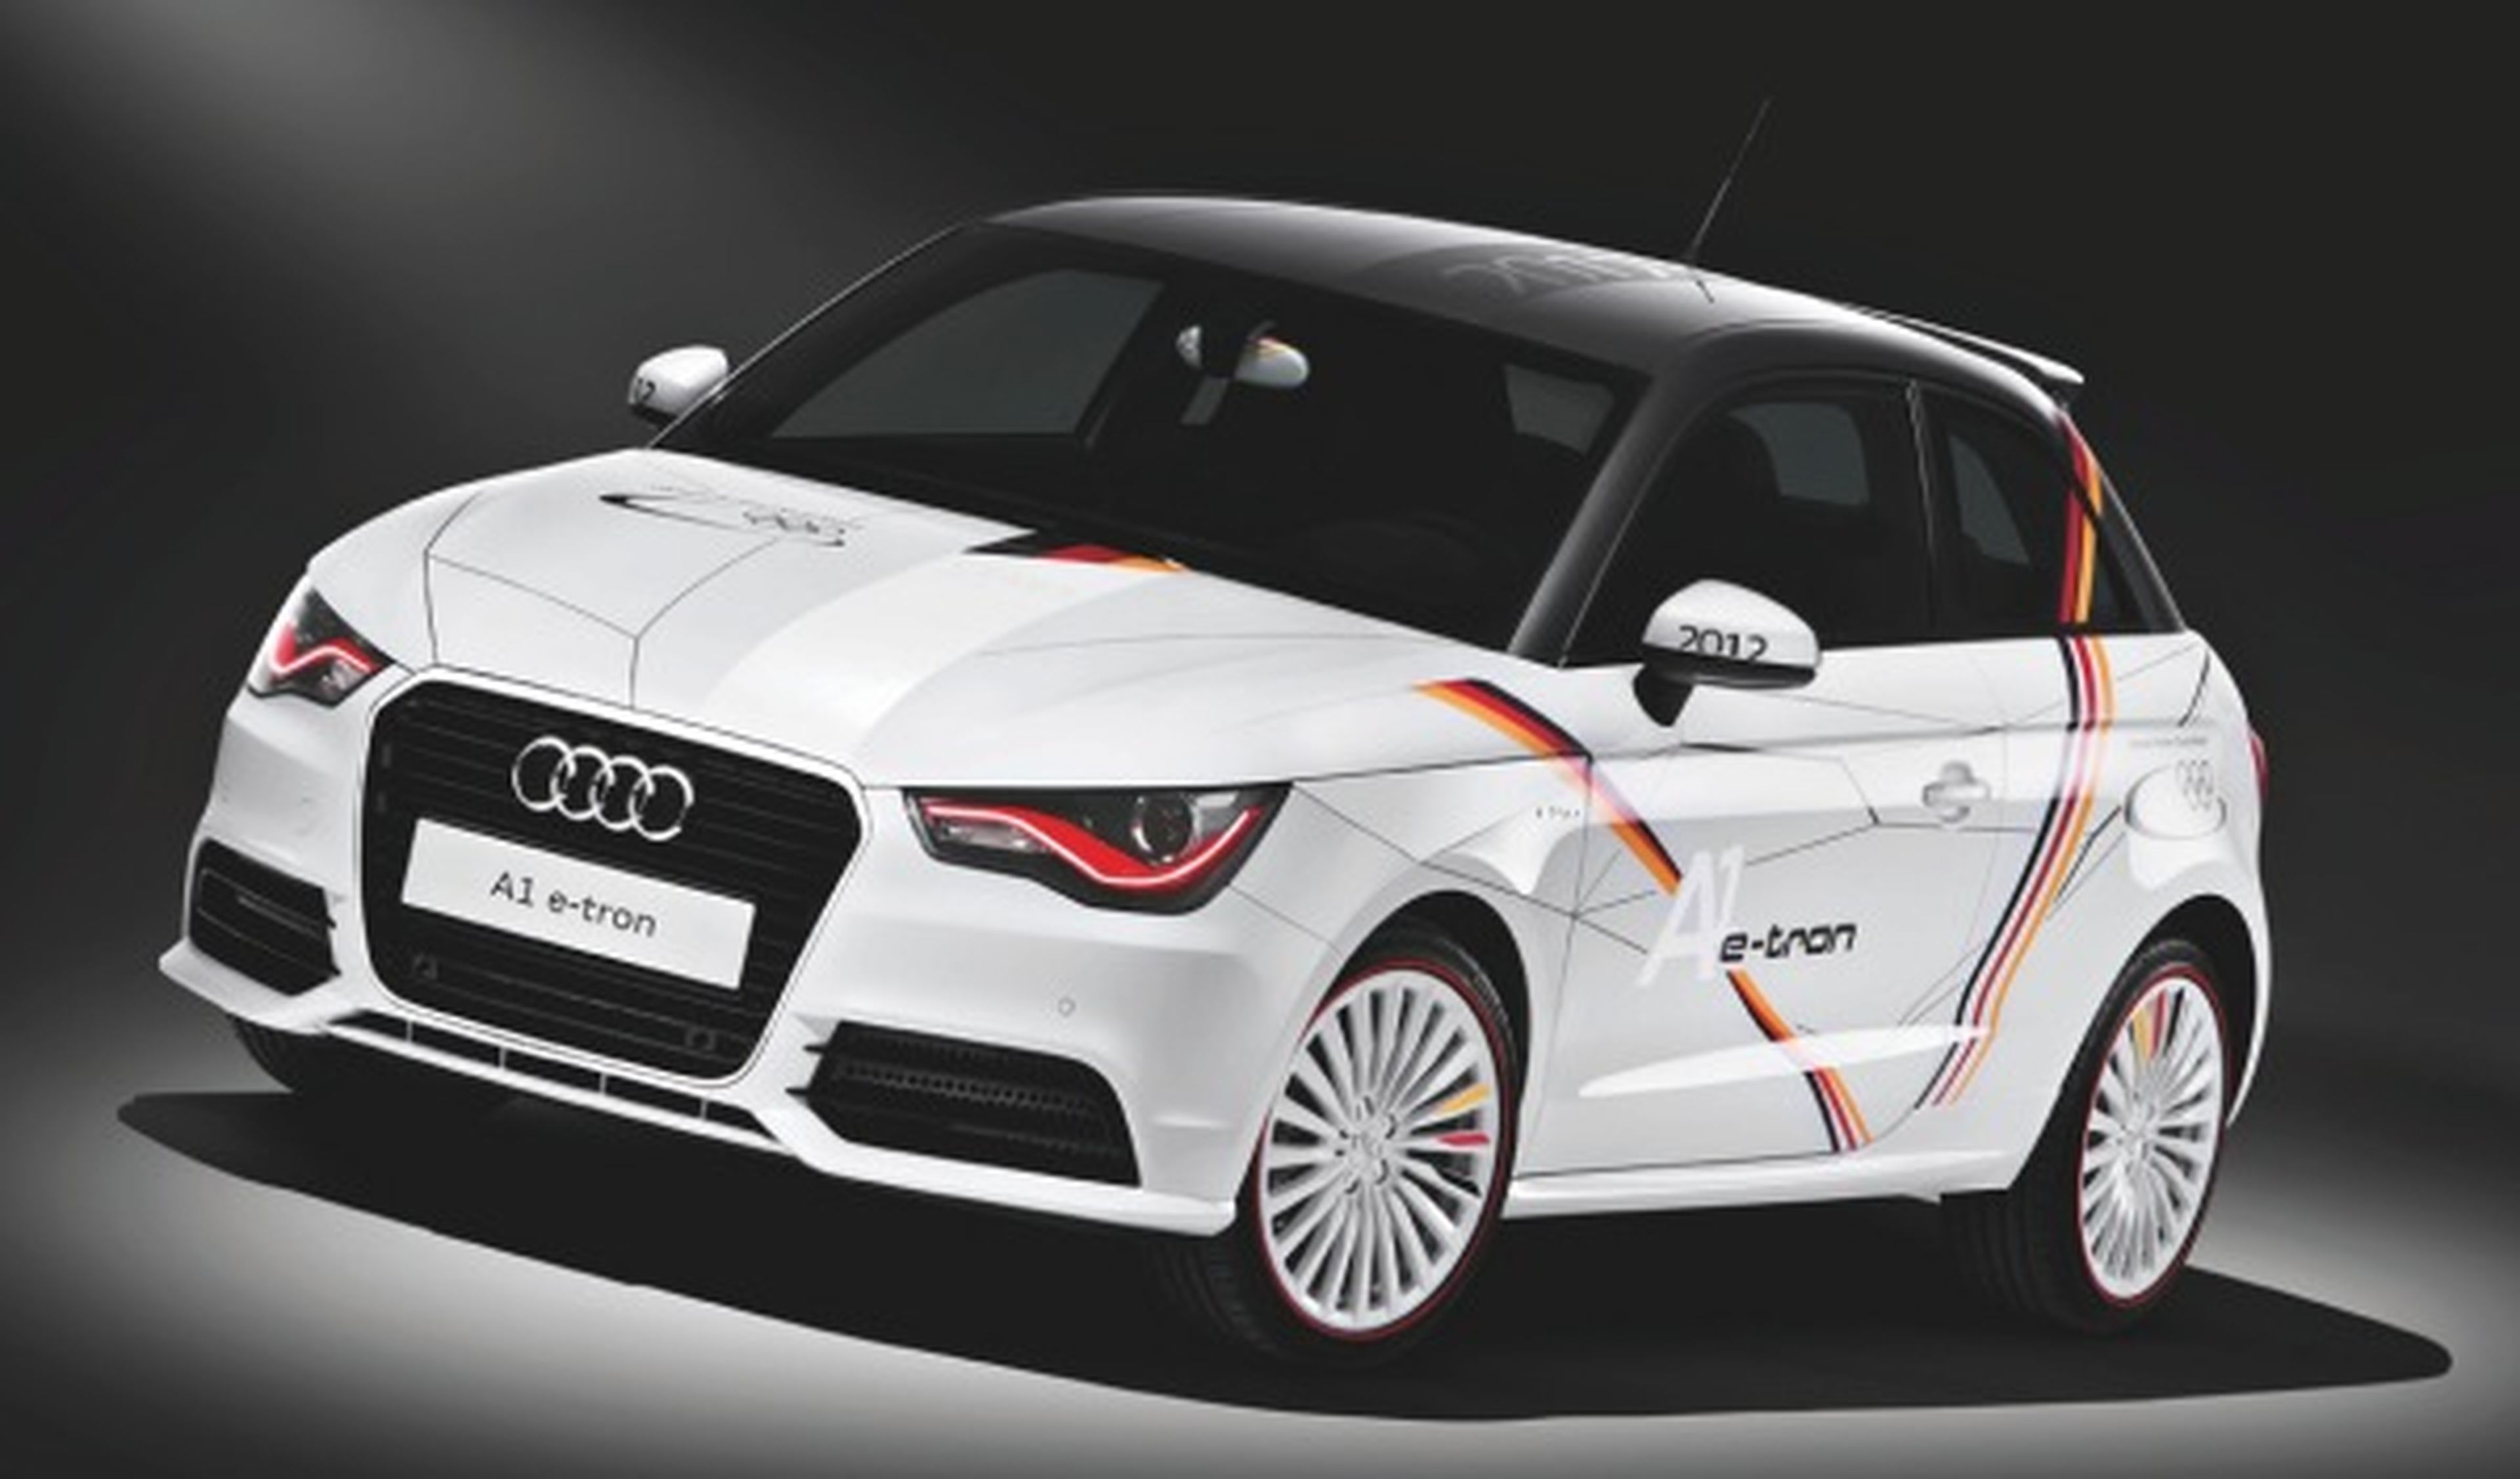 Un Audi A1 e-tron para el equipo alemán en los JJOO